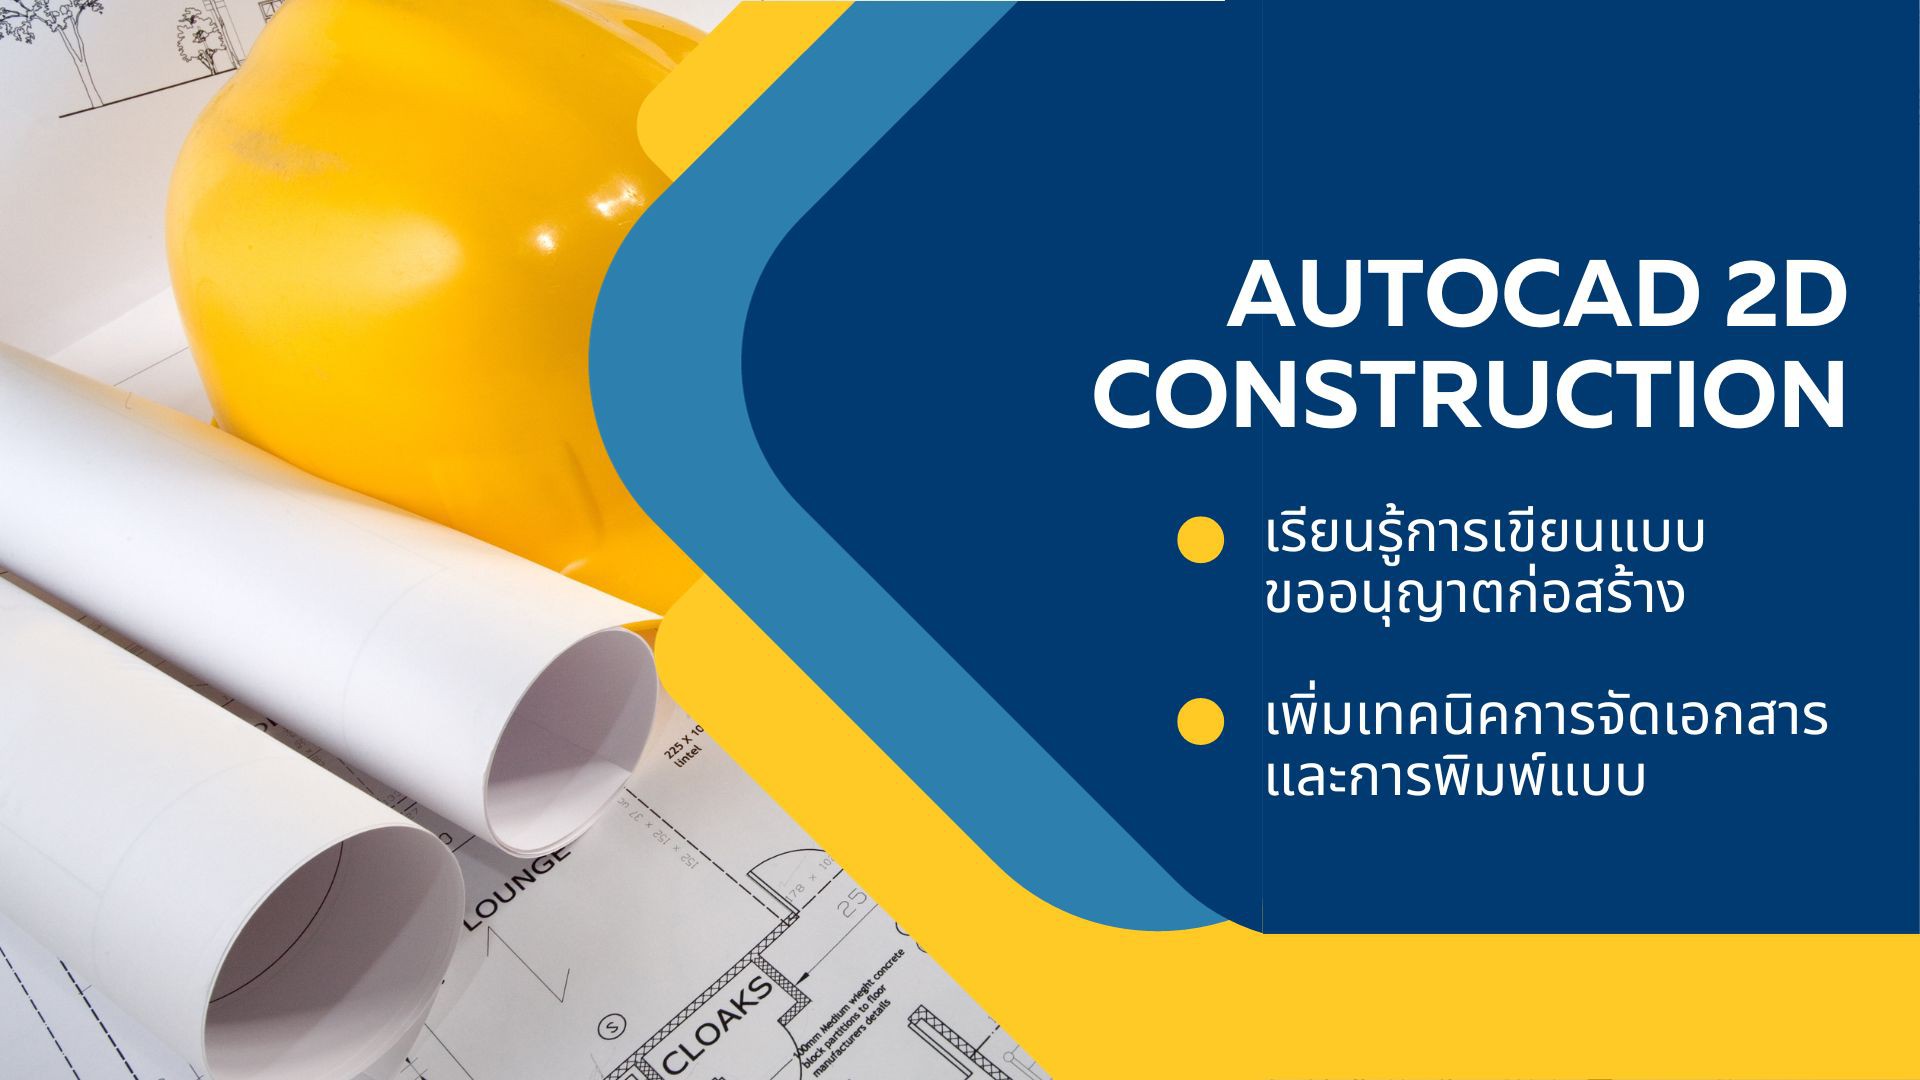 AutoCAD 2D Construction